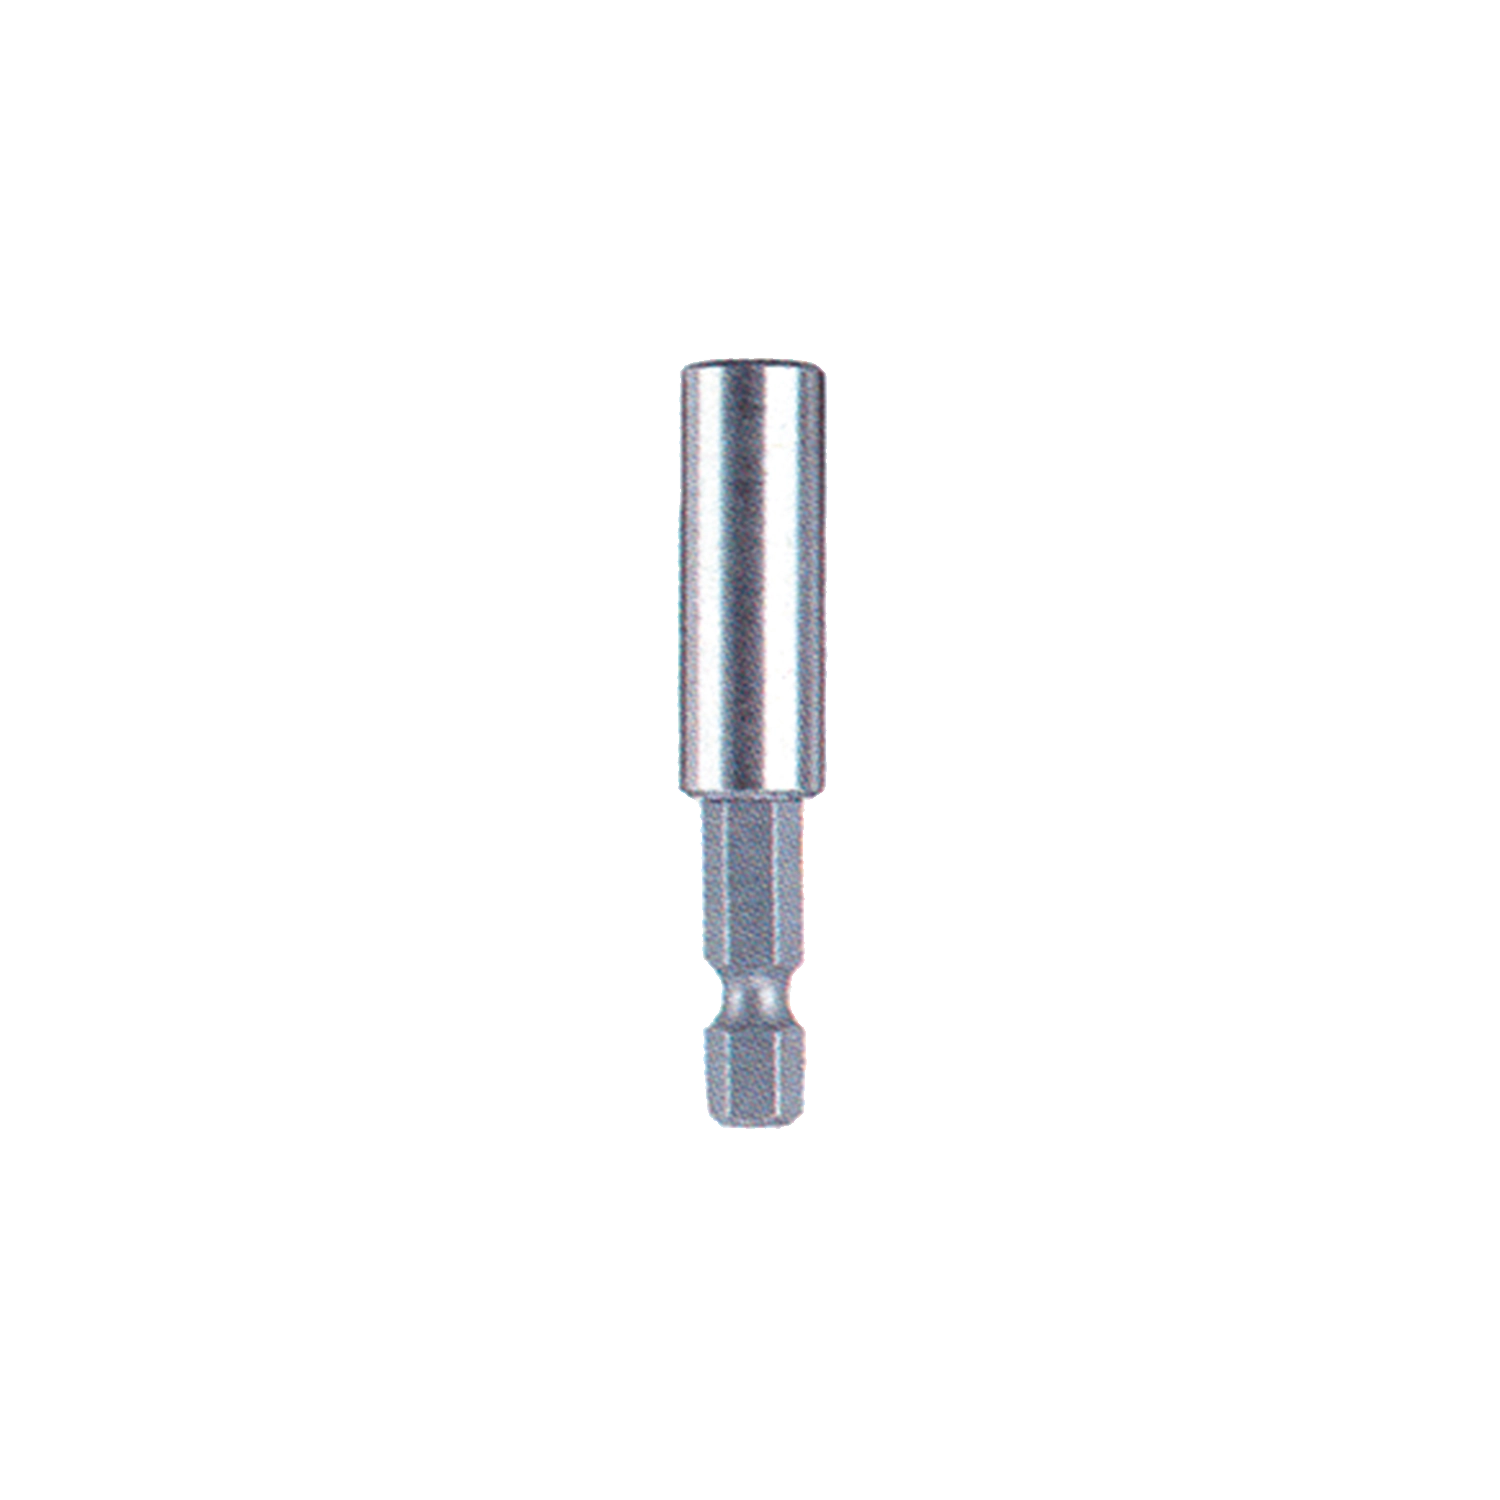 FACOM magnetische bitshouder 75 mm 899/4/1: Zilverkleurig, 75 mm lang, magnetisch.